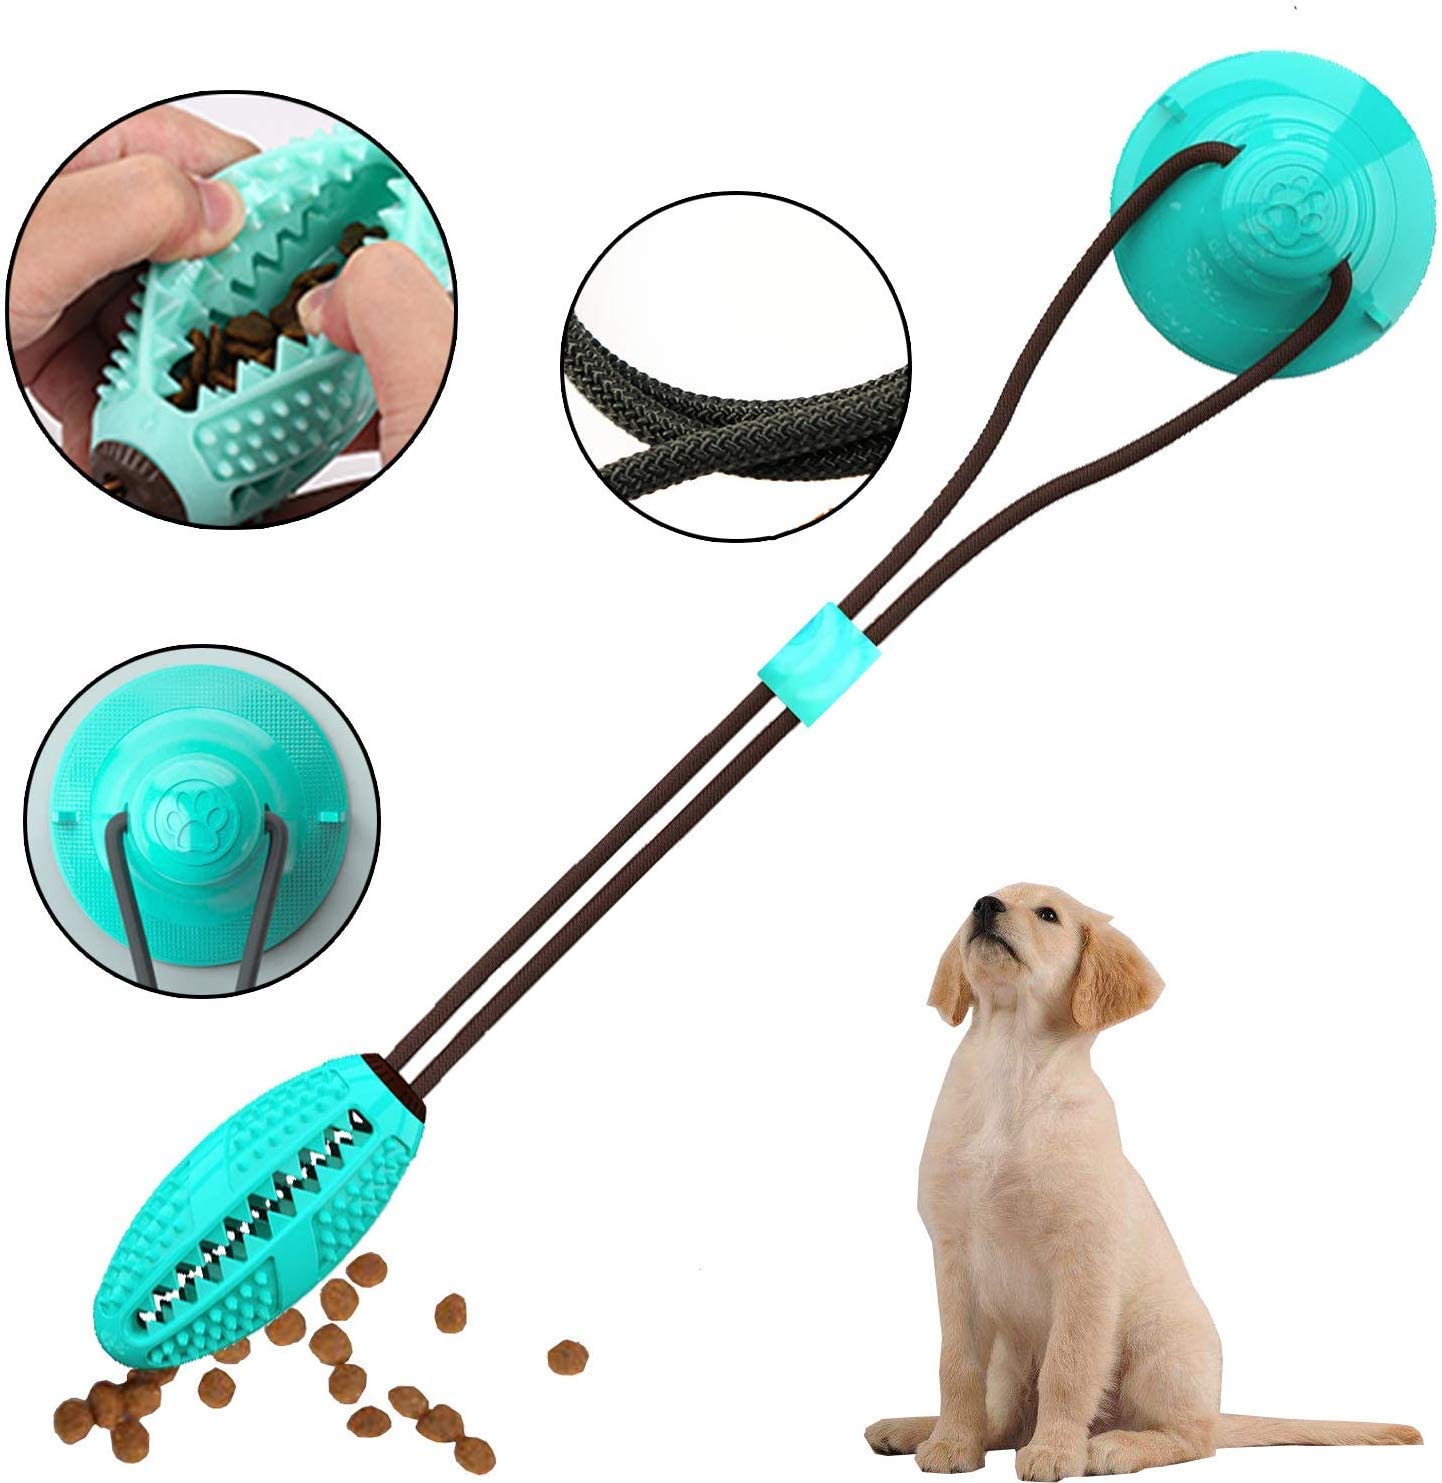  GHONLZIN Multifunction Pet Molar Bite Toy, Juguete Mordedor Mascota, Juguete Multifuncional para mordedura de Molar, Mordedura de Perro del Entrenamiento con Ventosa (#Blue) 